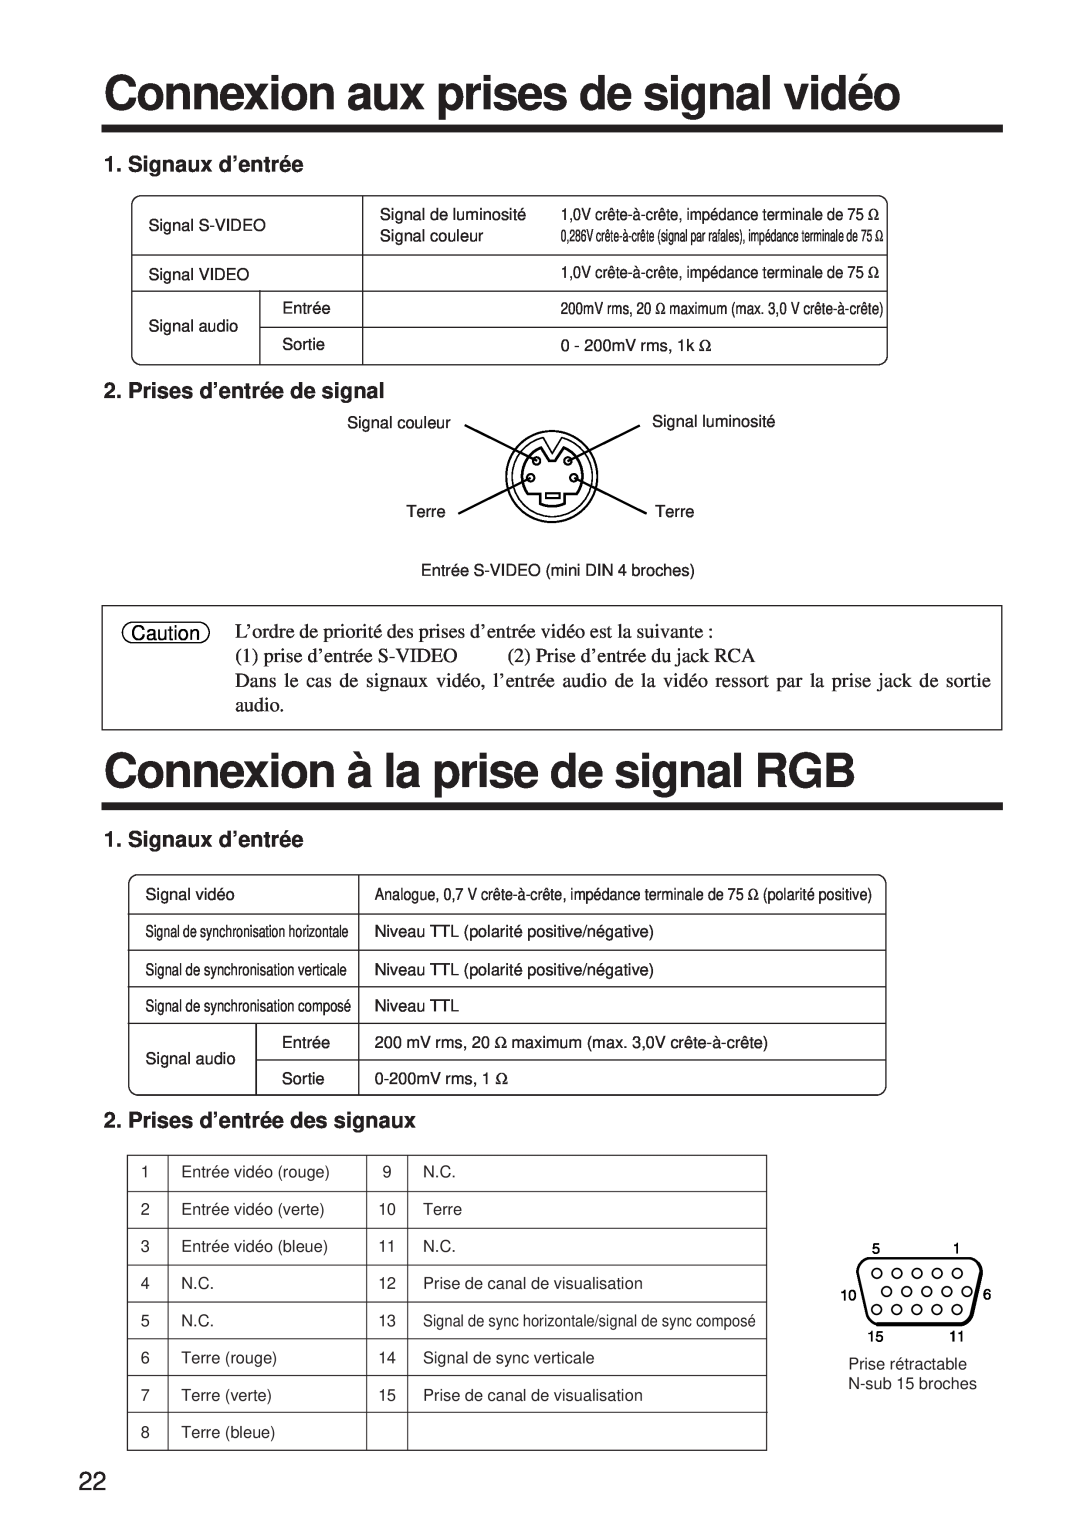 BOXLIGHT MP-650i user manual Connexion aux prises de signal vidéo, Connexion à la prise de signal RGB, Signaux d’entrée 